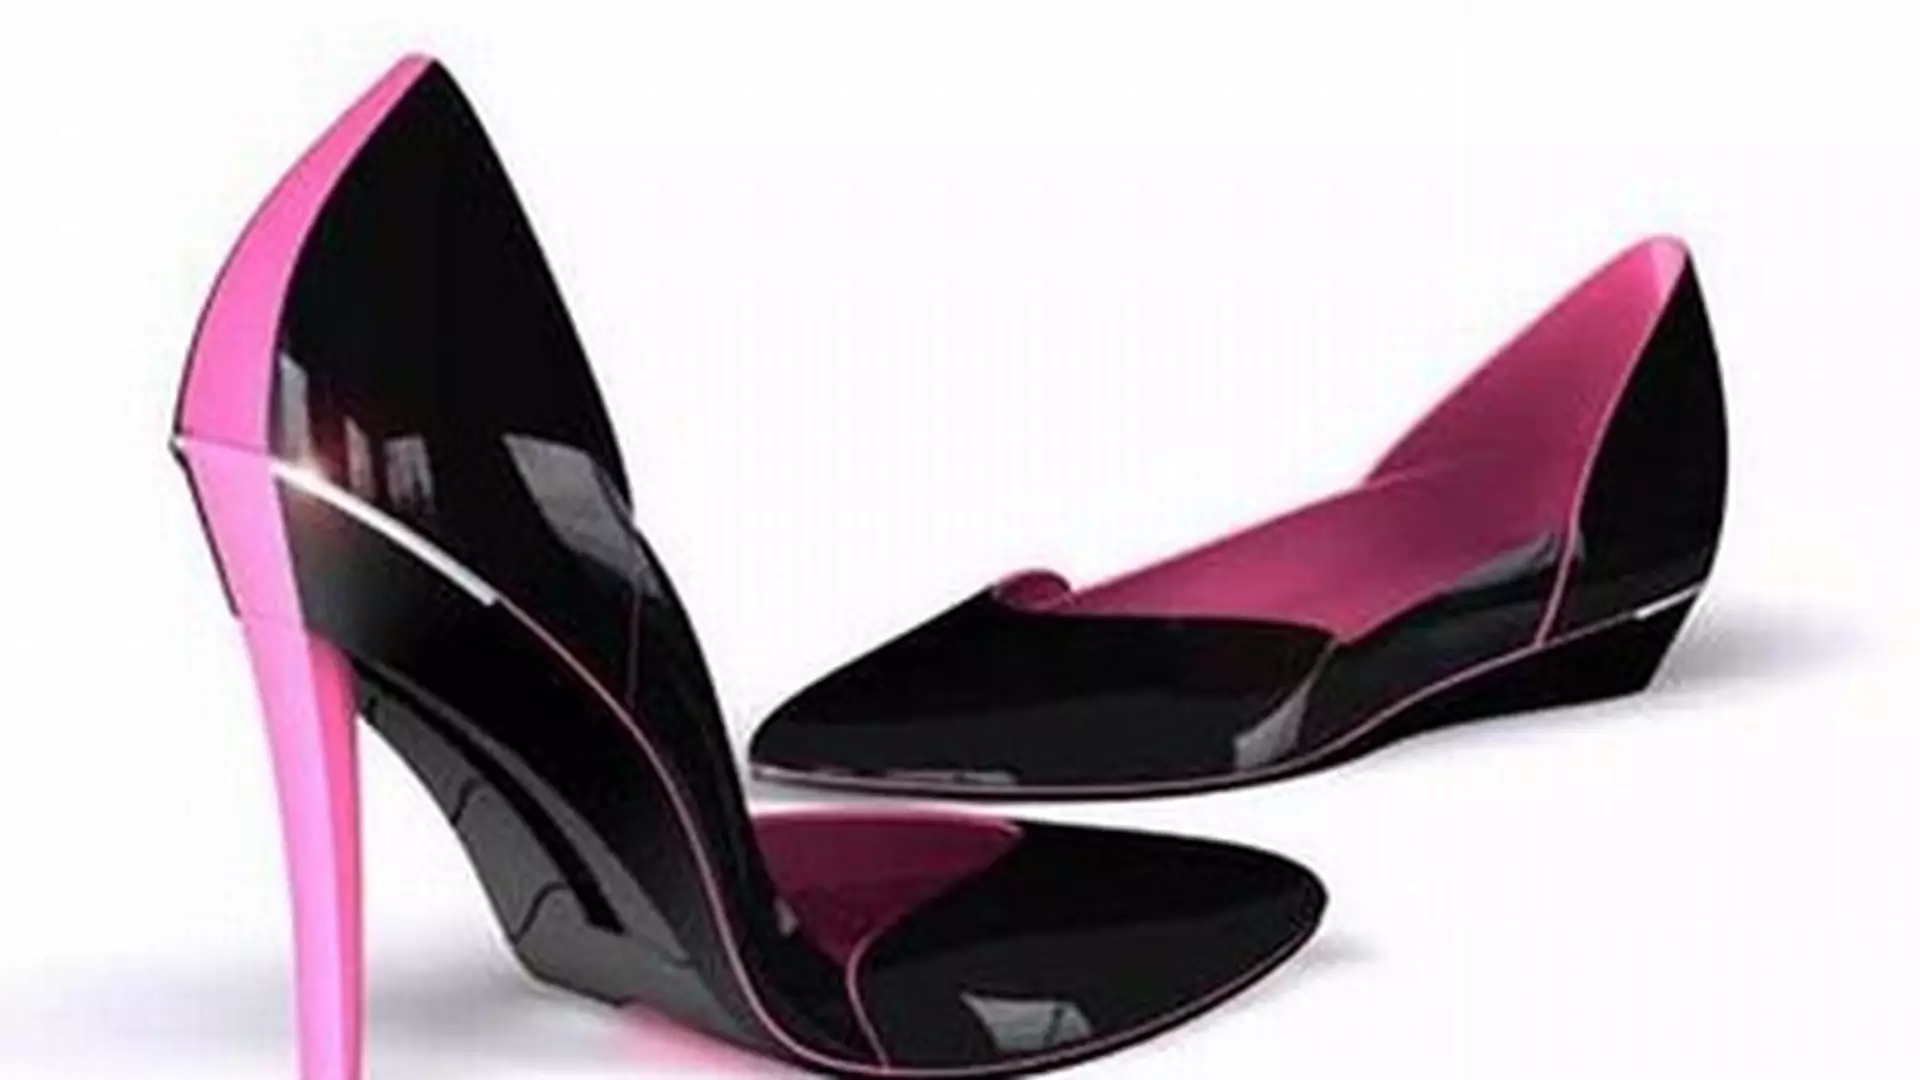 Moda dla zdrowia: buty ze składanymi obcasami